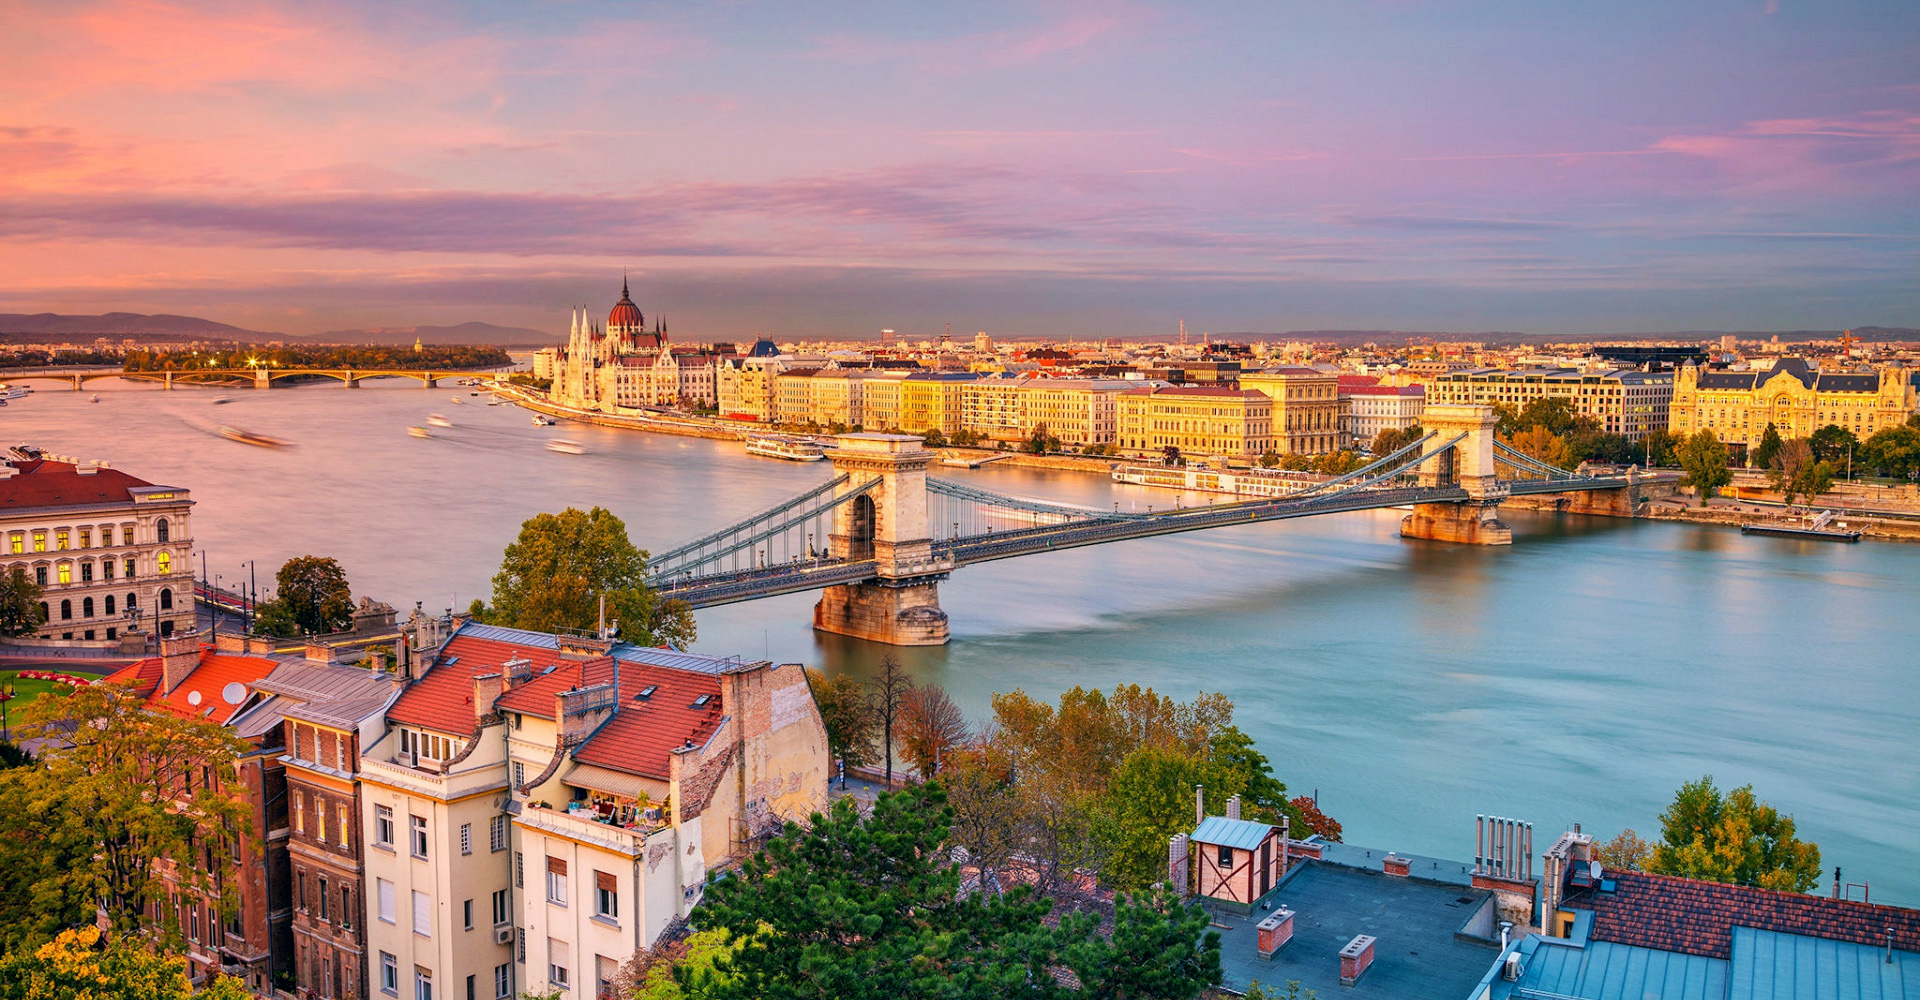 Що подивитись і чим зайнятися в Будапешті? ТОП 10 місць